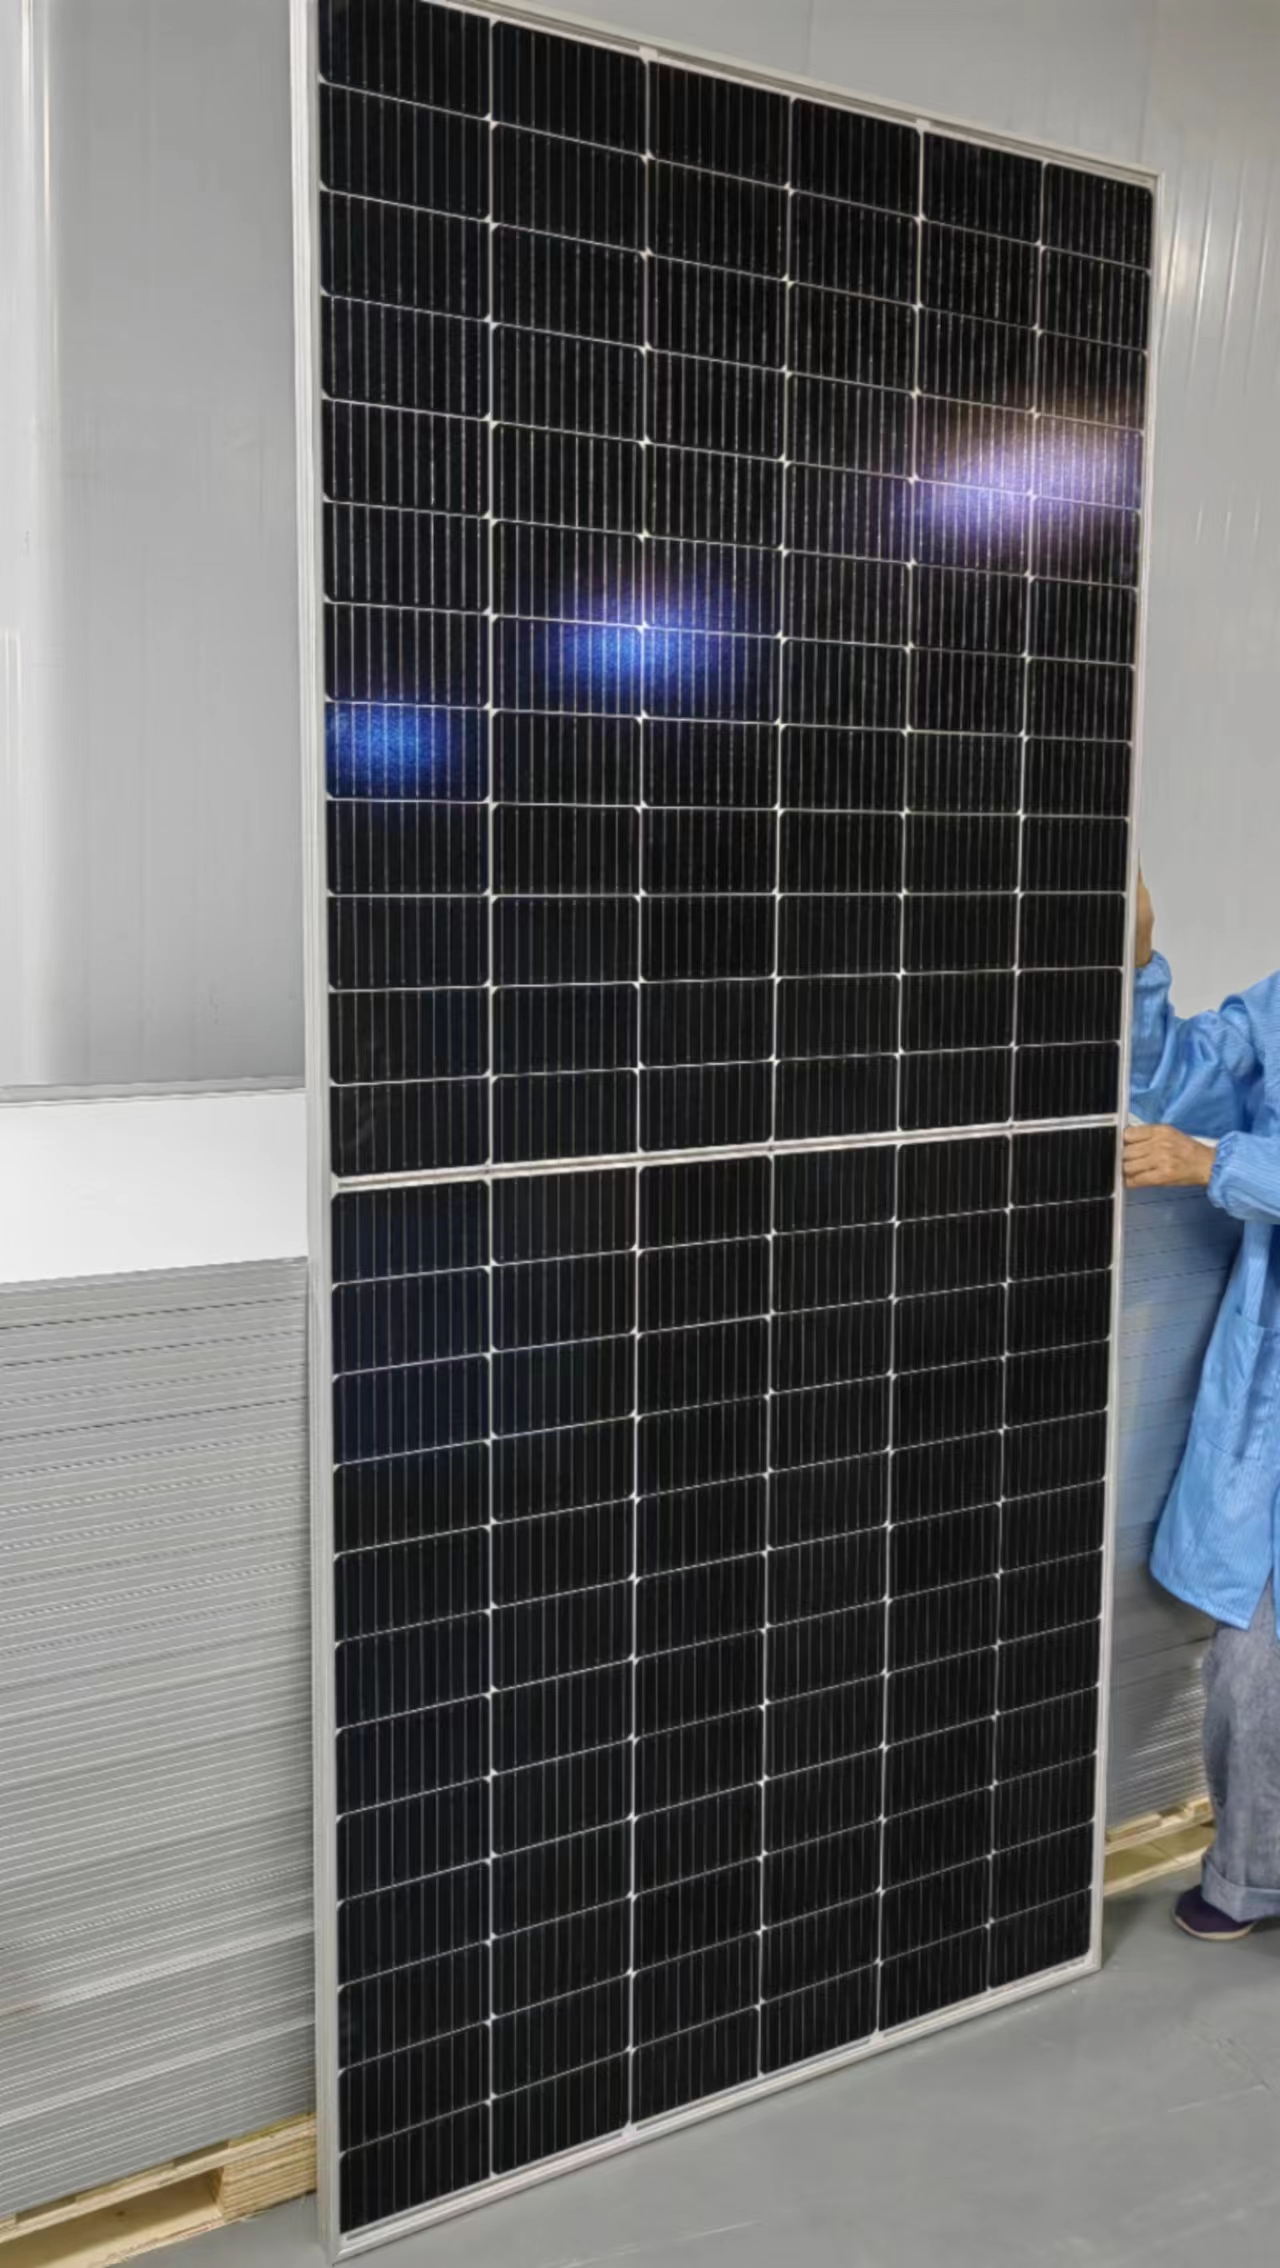 Painel solar em estoque produz diariamente 400 unidades de painel solar mono de 550 W Item mais vendido Módulo fotovoltaico de 550 W com alta eficiência 